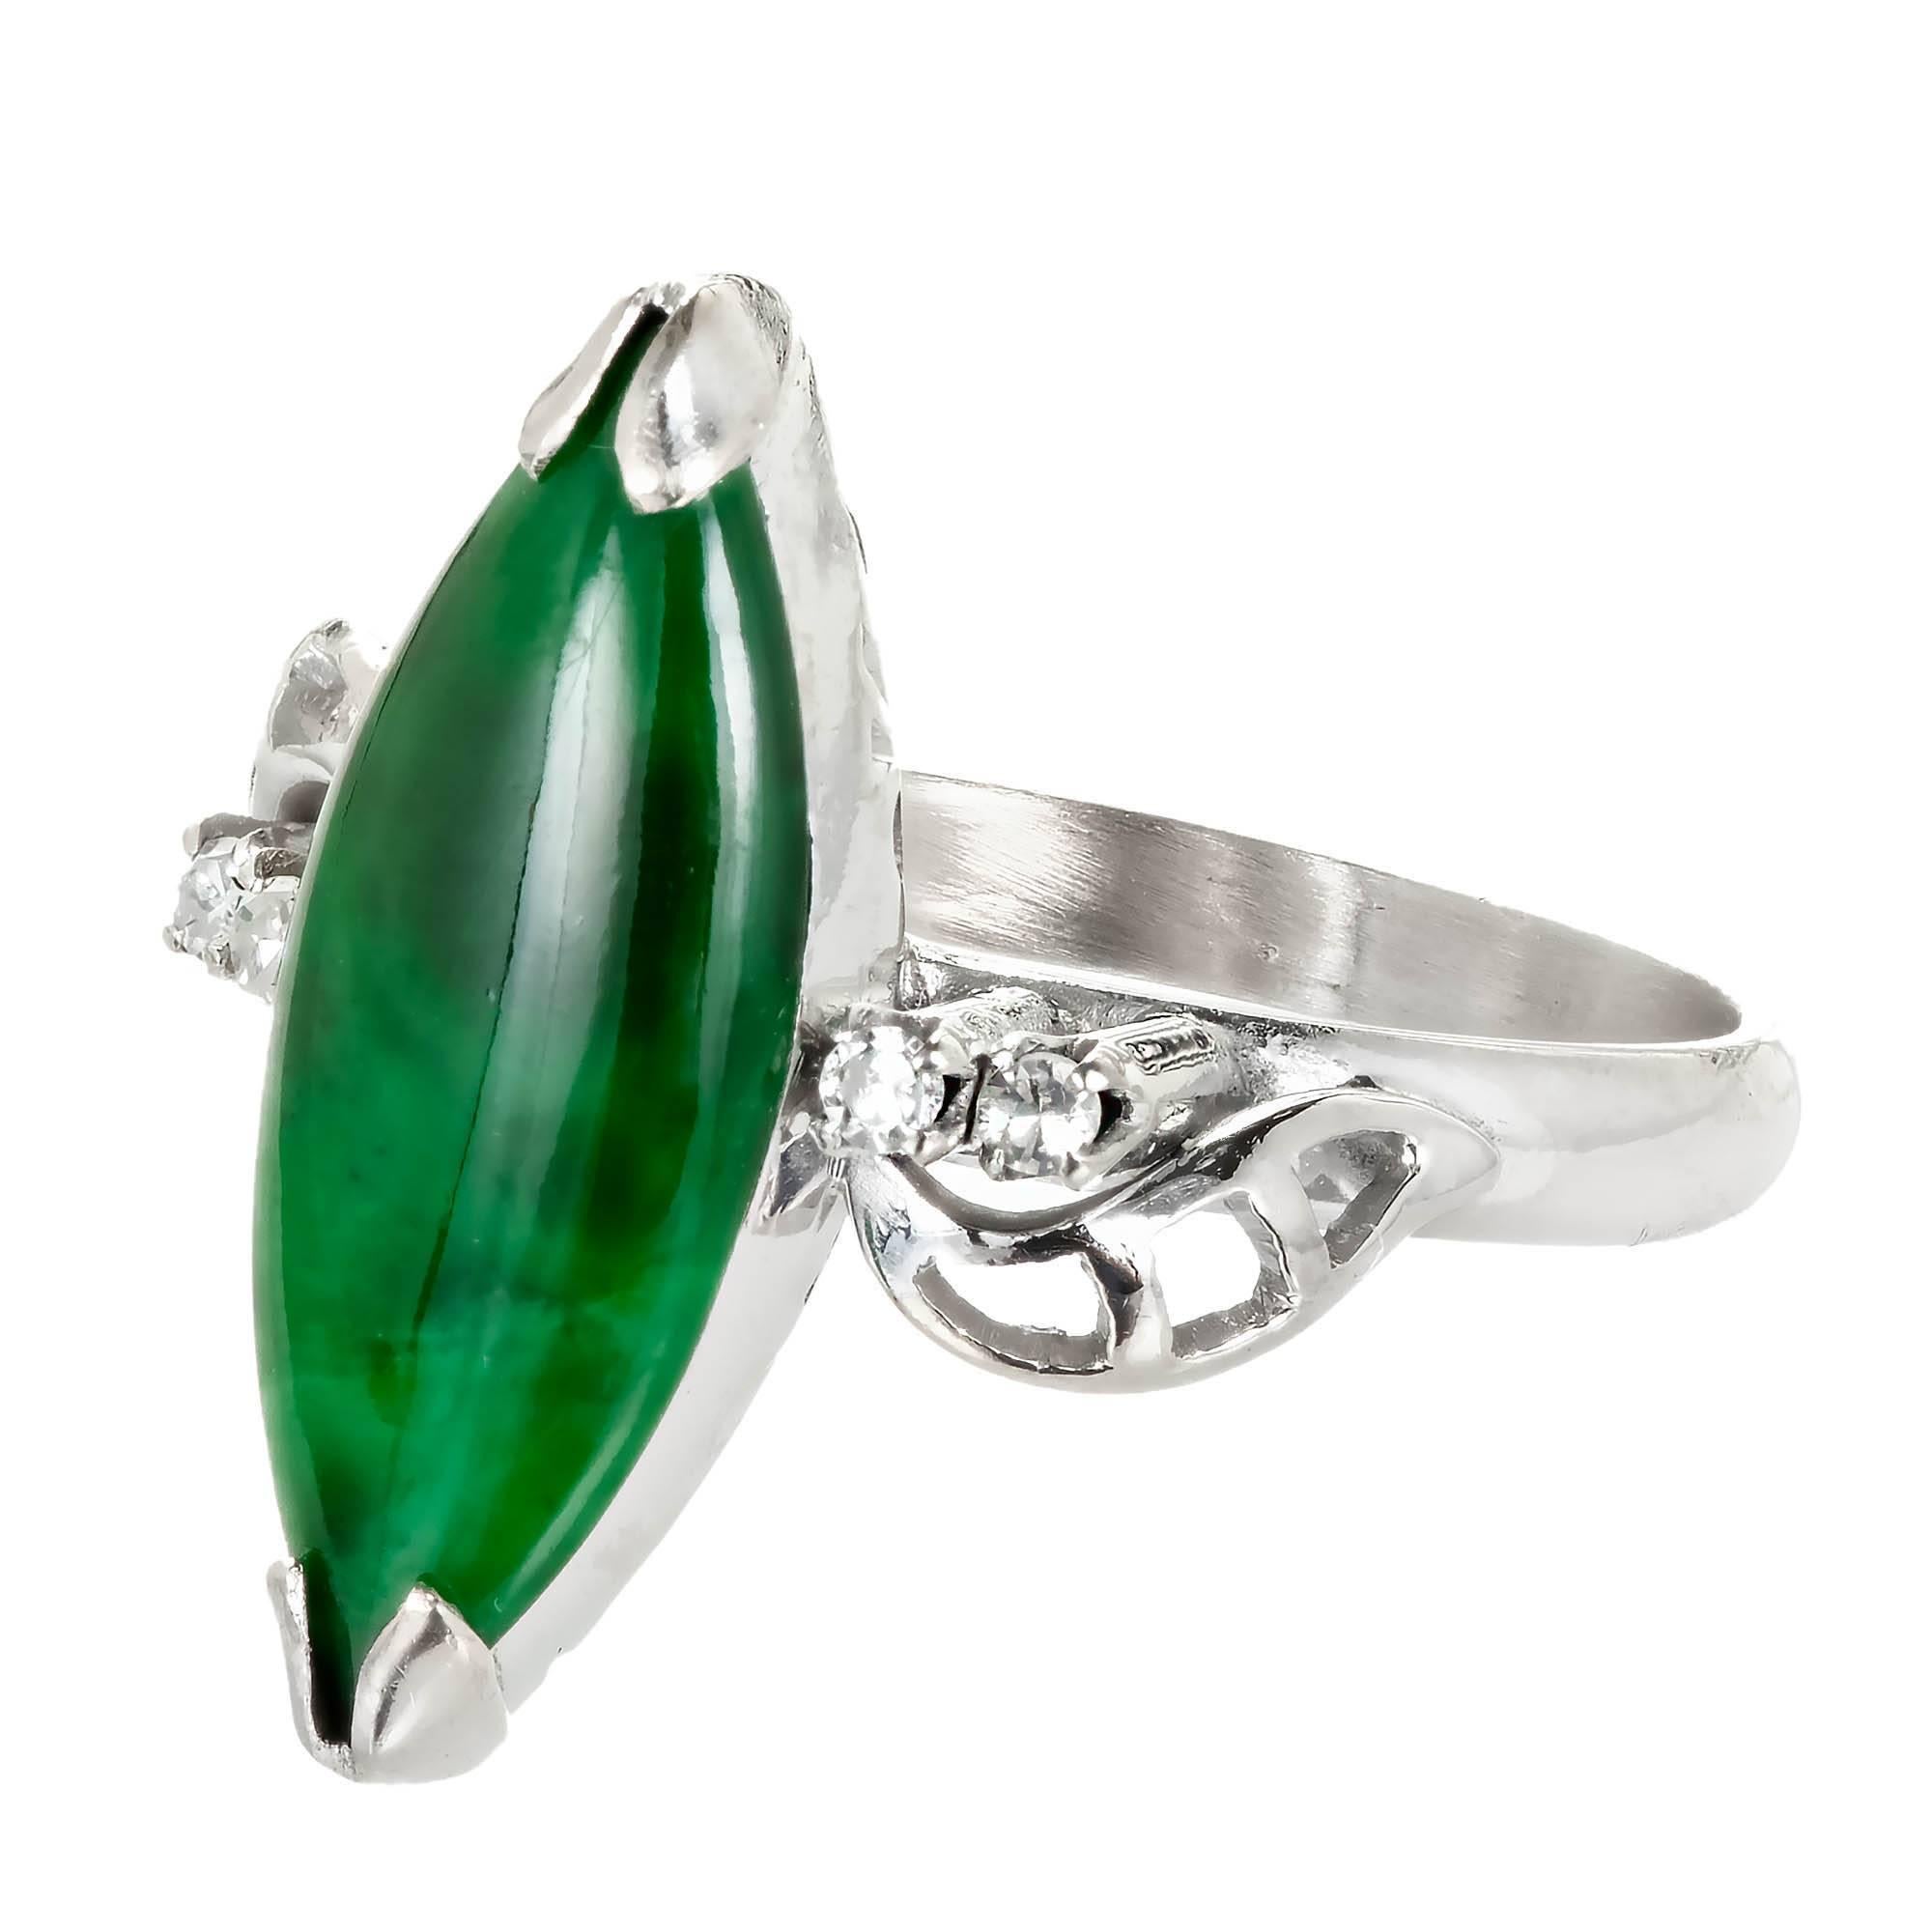 Bague marquise vert vif en jadéite Jade et diamant du milieu du siècle dernier. Le jade a une teinte verte envoûtante qui est accentuée par 4 diamants taille unique dans une monture en or blanc 14k. Certifié par le GIA comme étant naturel et sans